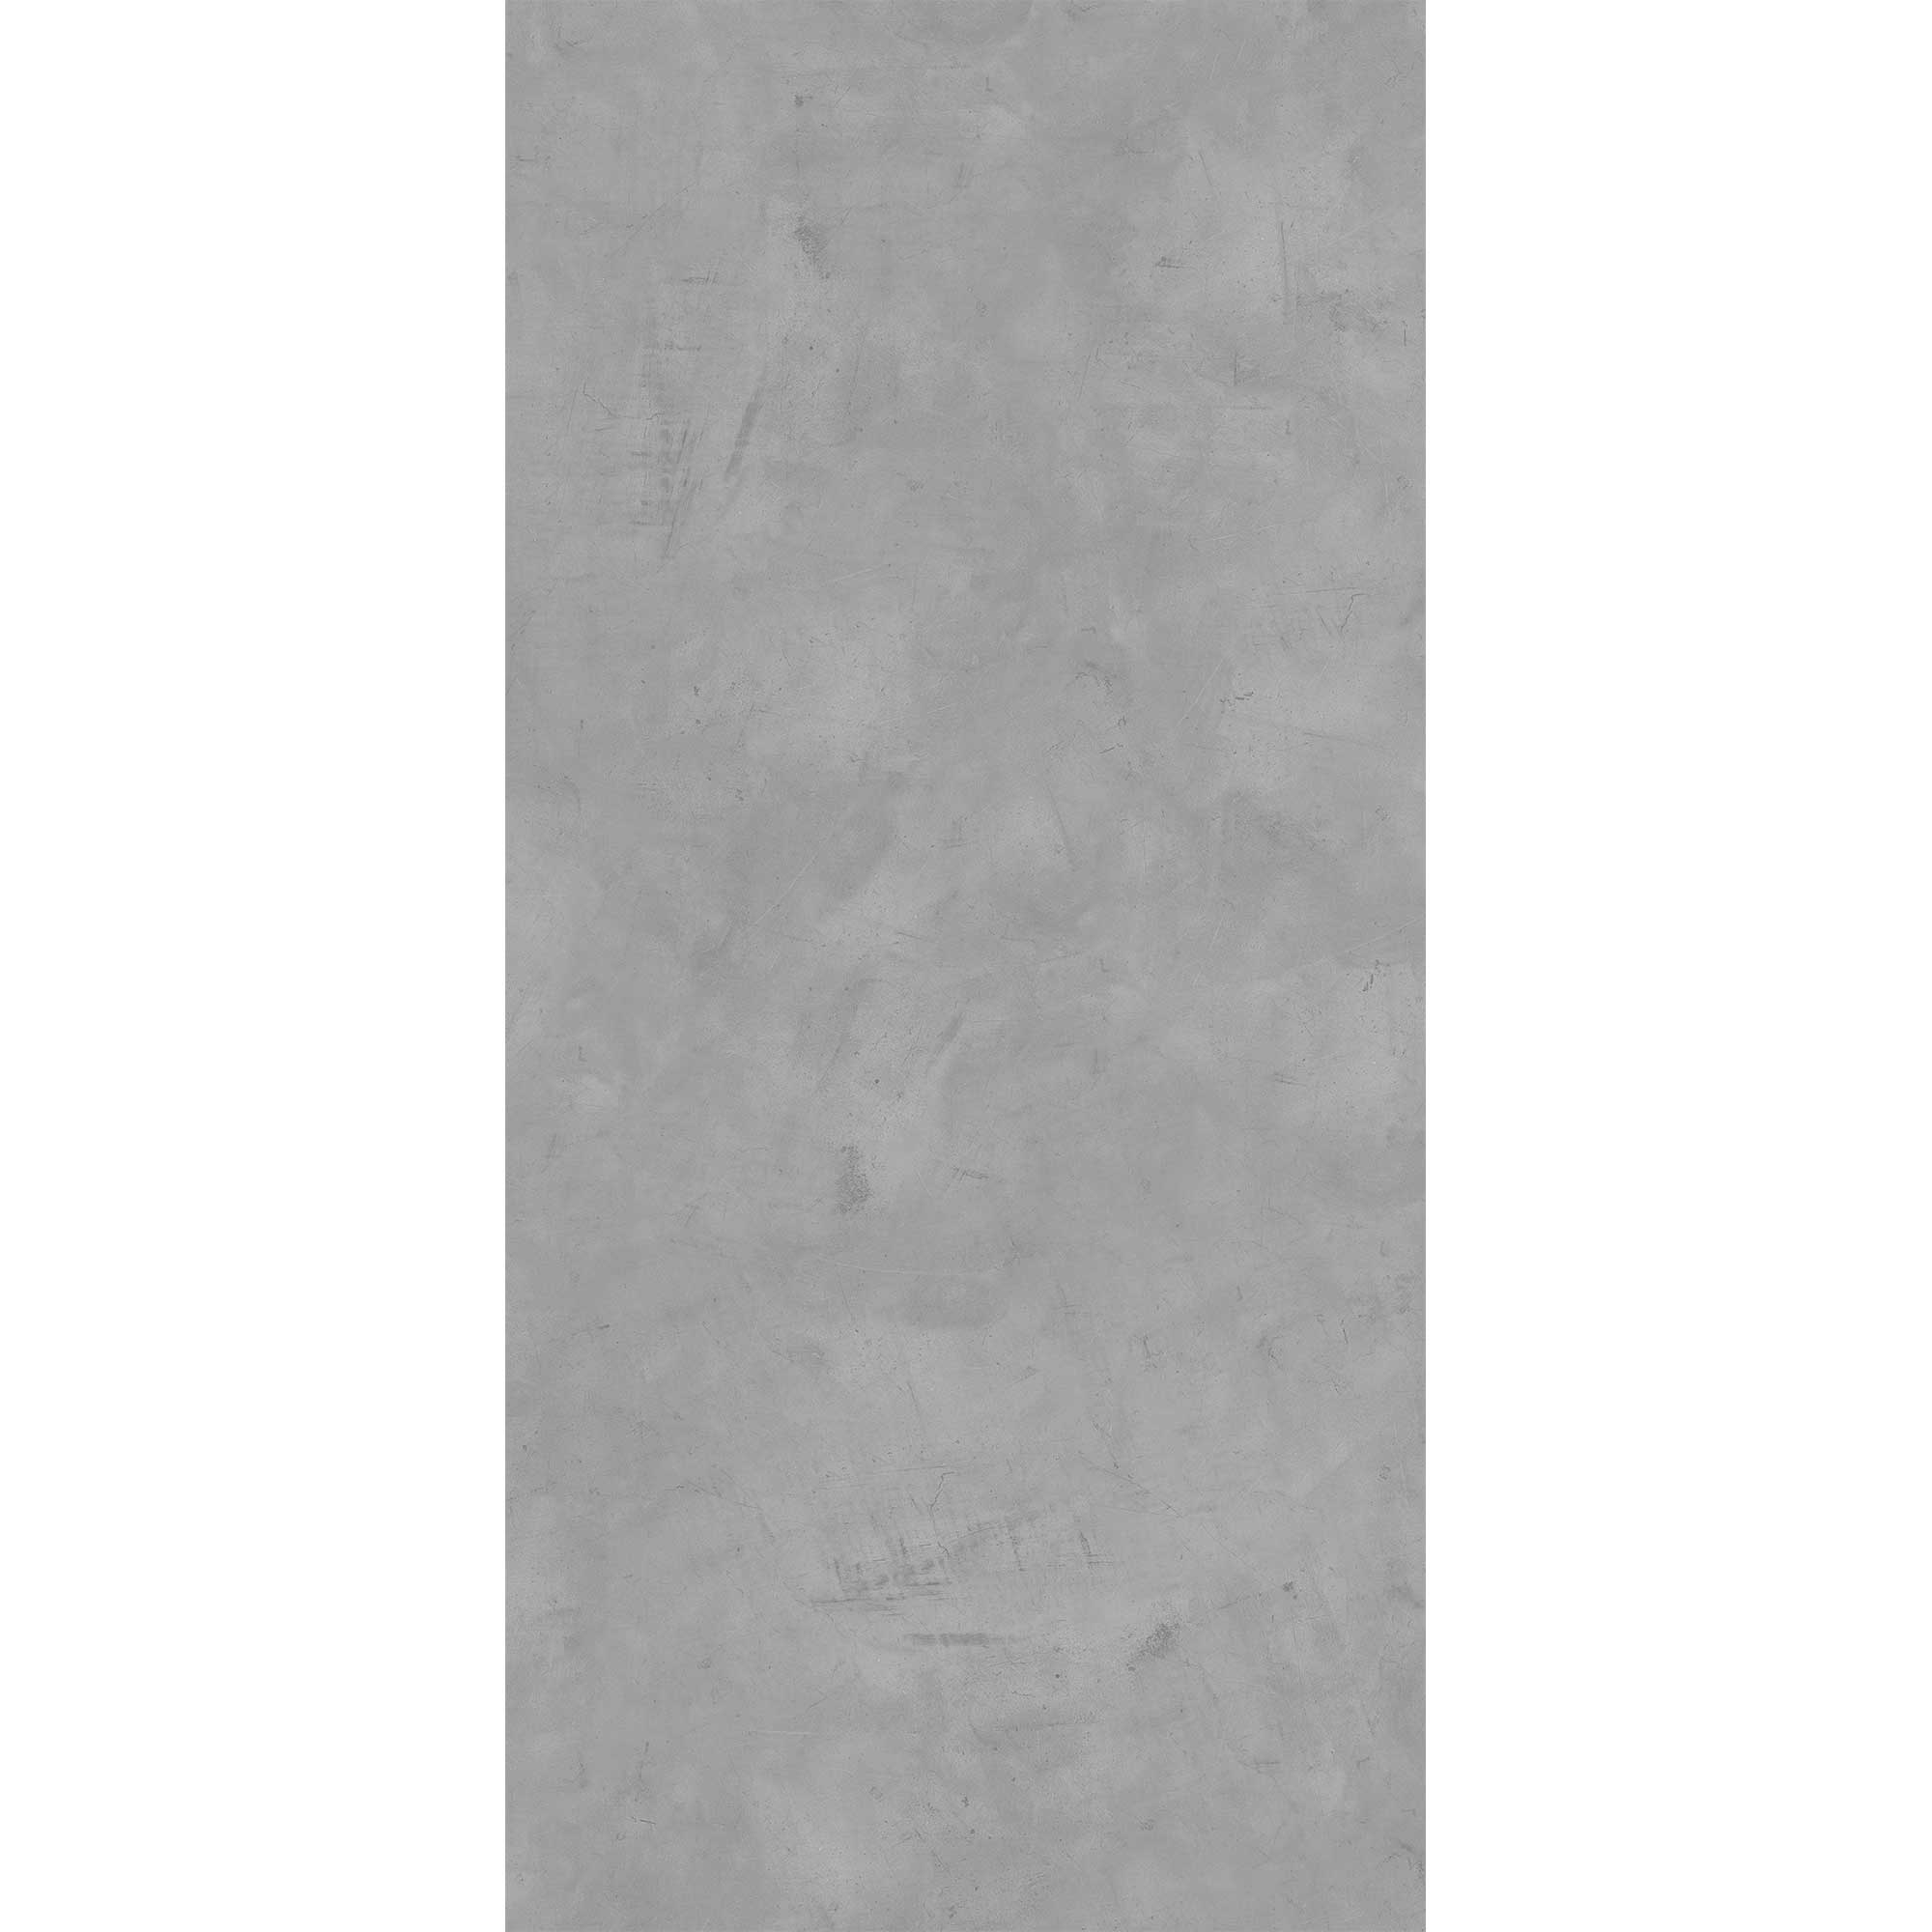 Duschrückwand 'Quick72' Softtouch Betonoptik grau 150 x 255 cm + product picture